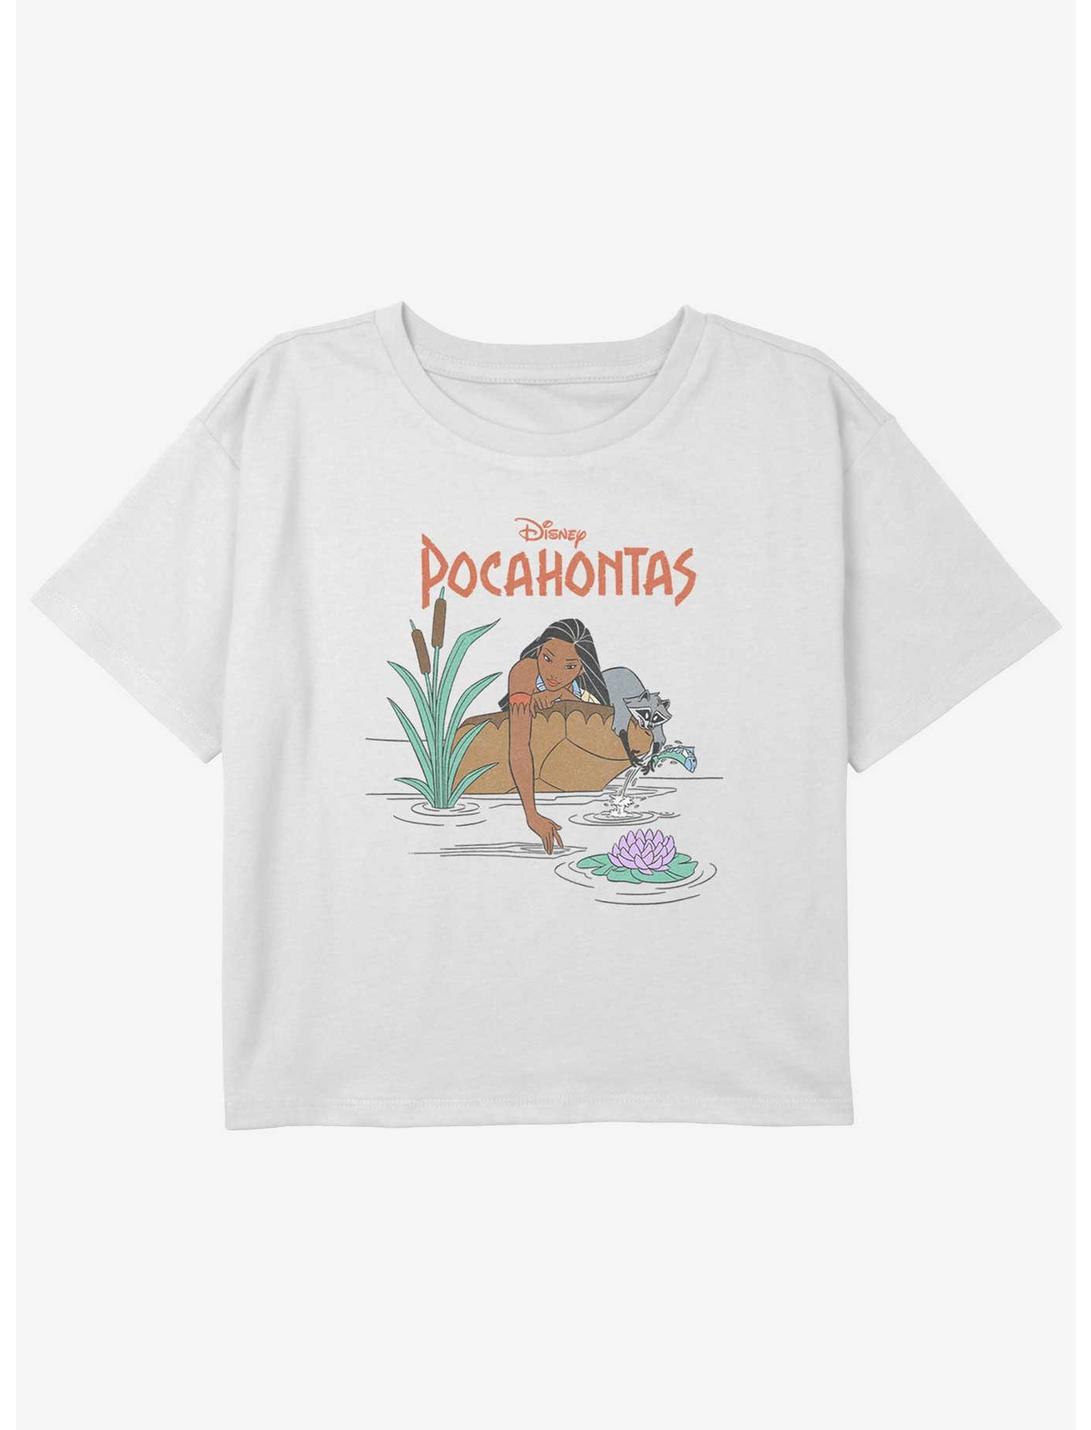 Disney Pocahontas Meeko Fishing Girls Youth Crop T-Shirt, WHITE, hi-res